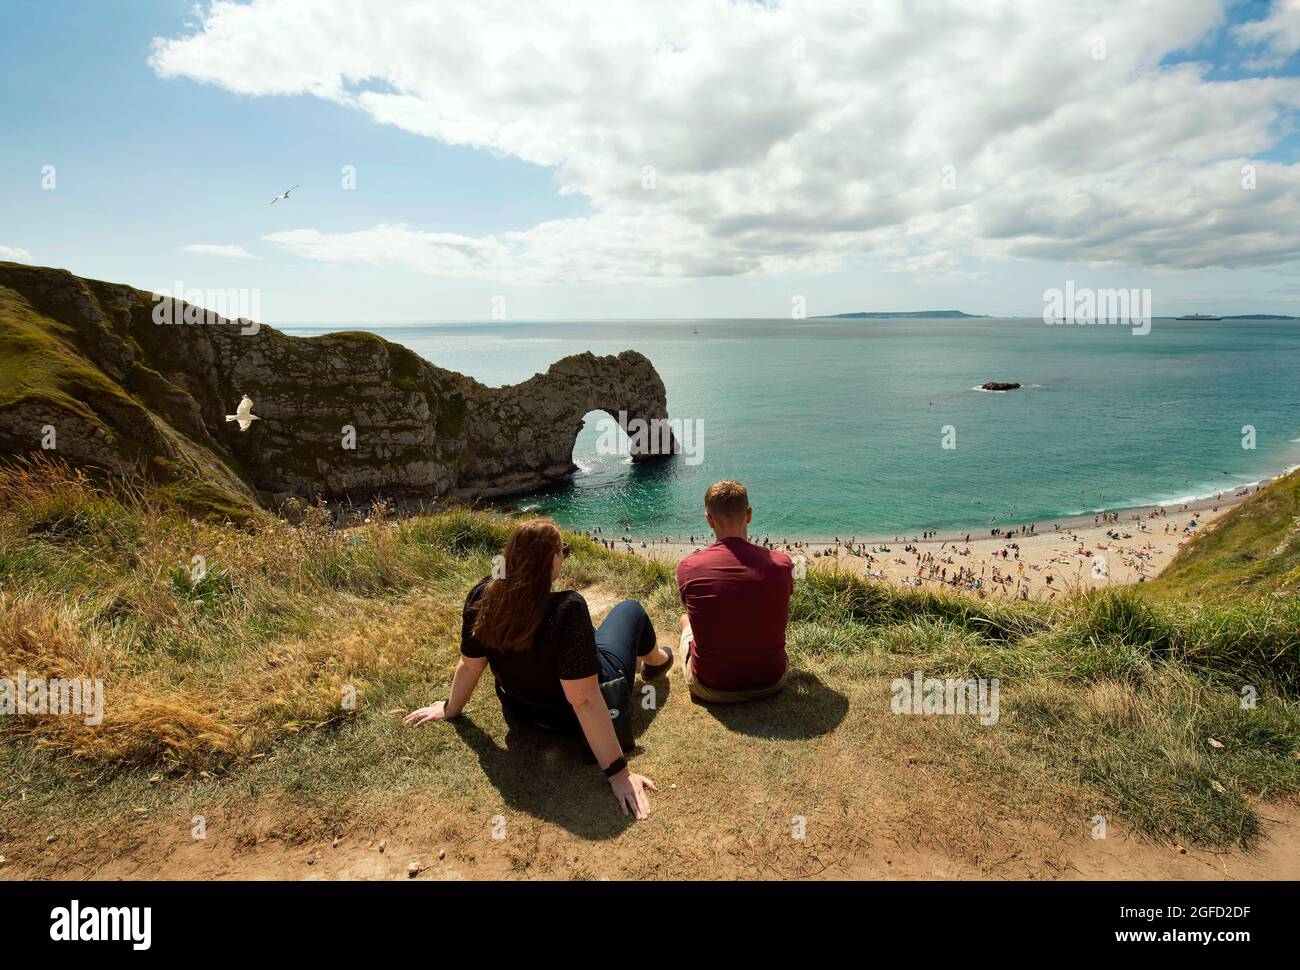 Durdle Door, le paysage le plus emblématique de la côte jurassique avec son arche de calcaire naturel. Jeune couple appréciant un dimanche ensoleillé. Dorset, Royaume-Uni. 22 août 2021 Banque D'Images